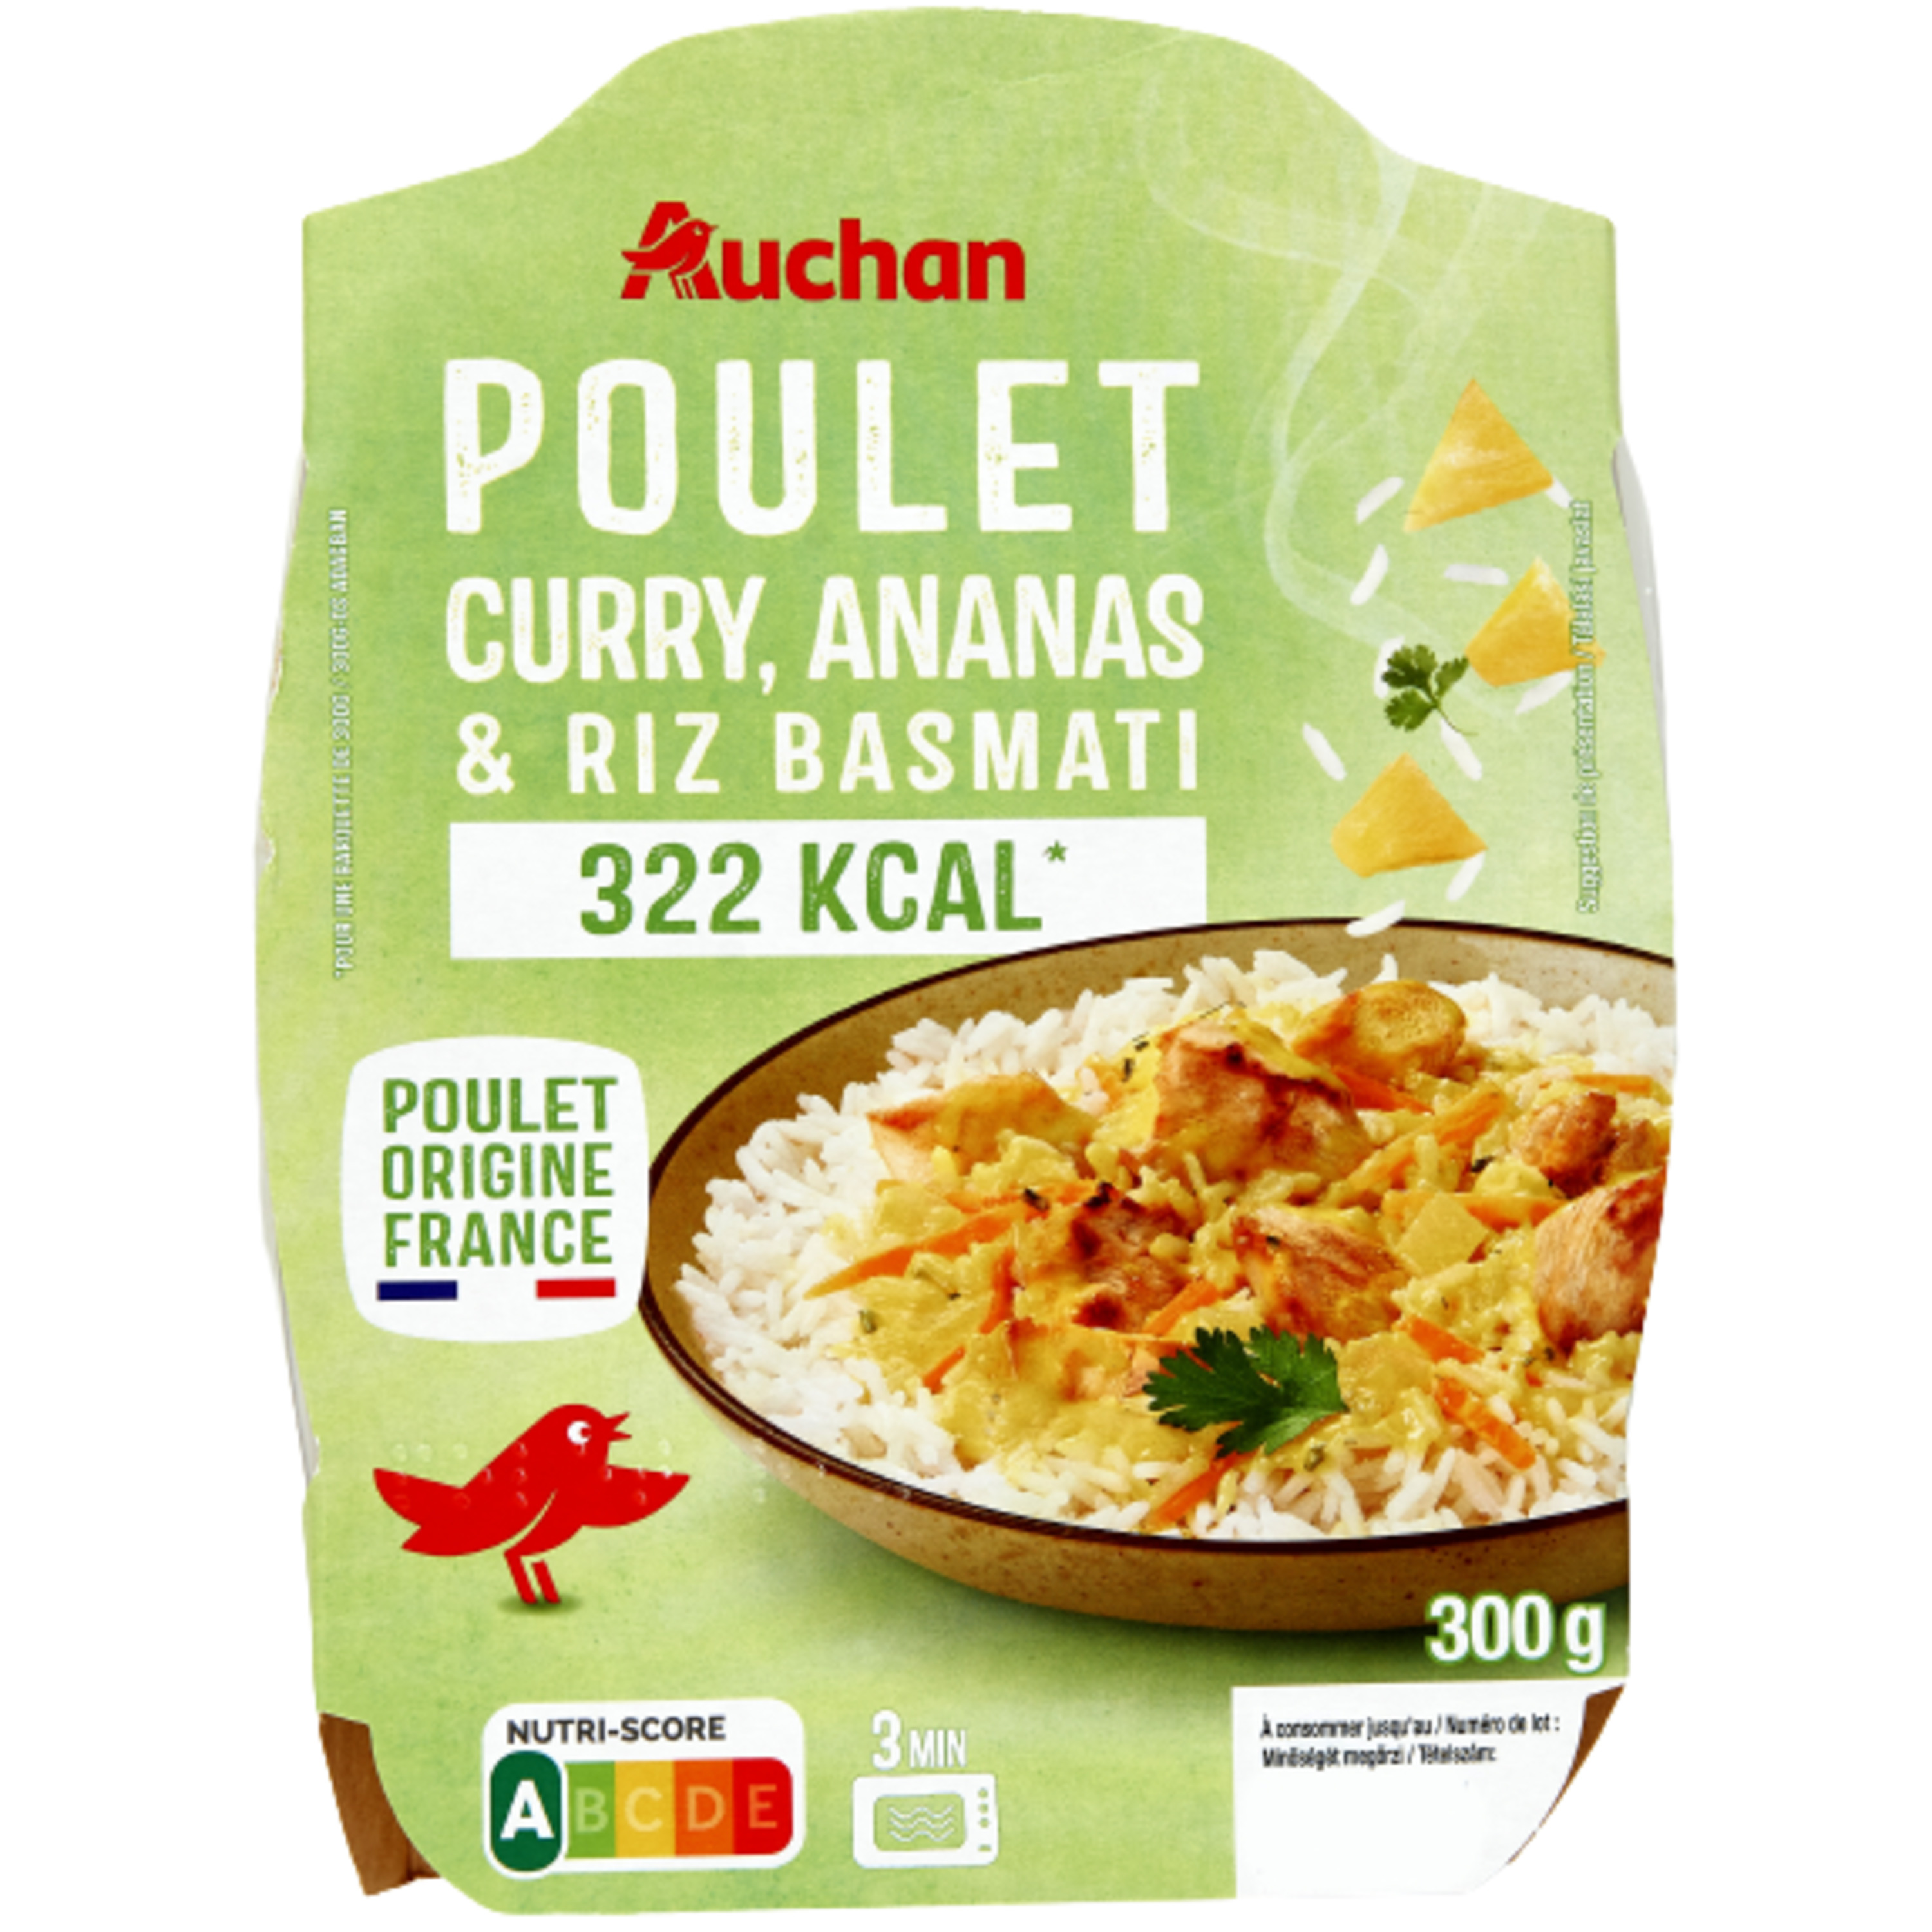 AUCHAN Poulet au curry et son riz barquette 2min au micro-ondes 1